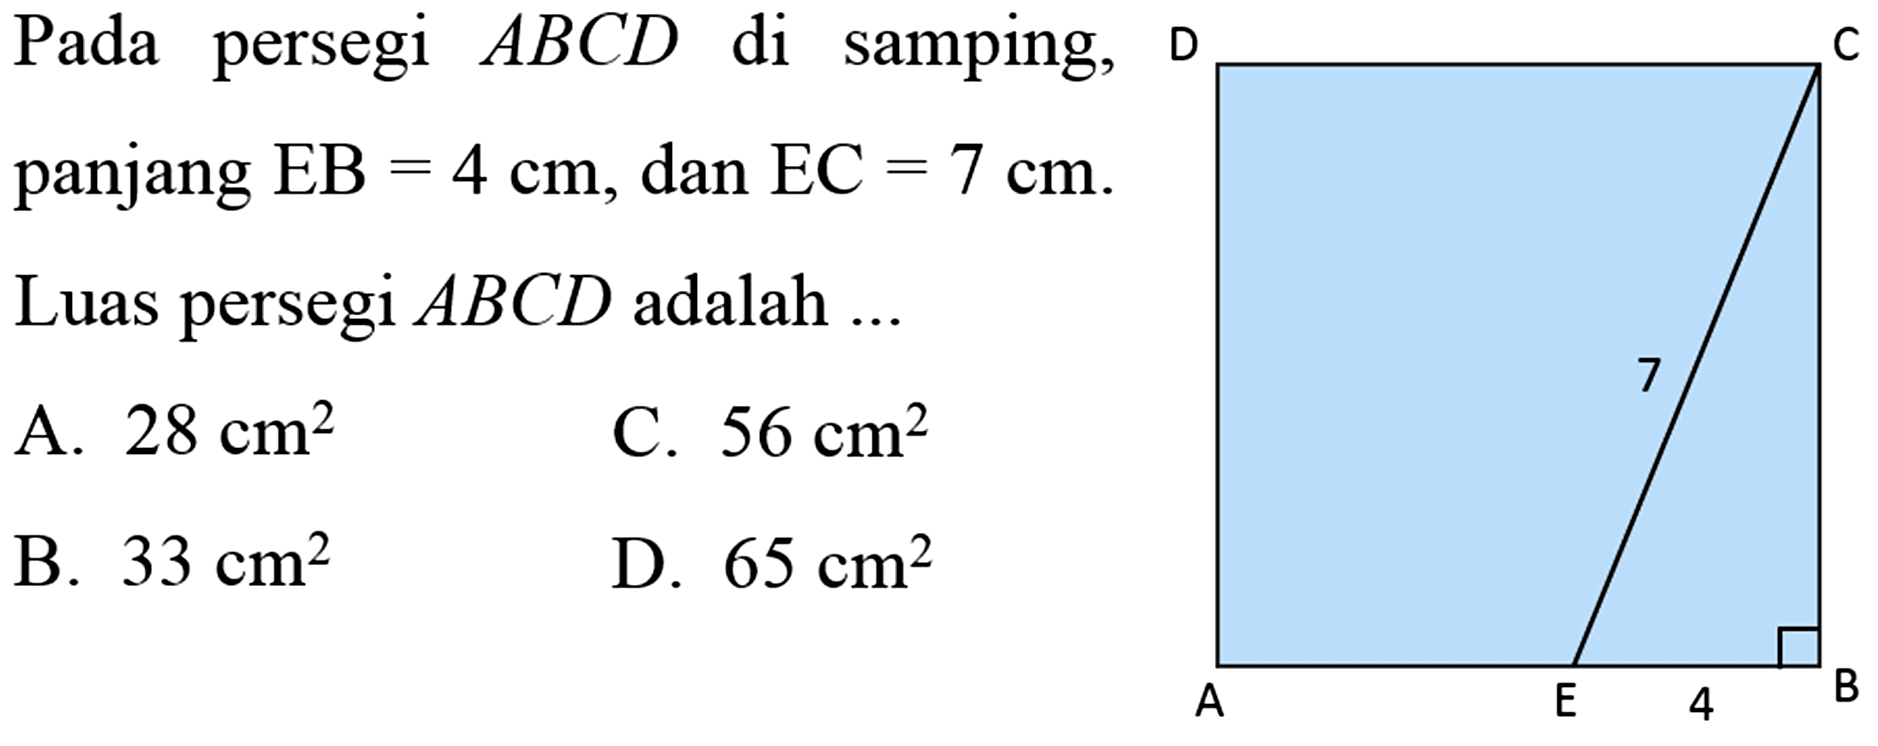 Pada persegi ABCD di samping, D C 7 A E 4 8 panjang EB=4 cm, dan EC=7 cm .Luas persegi ABCD adalah  ....